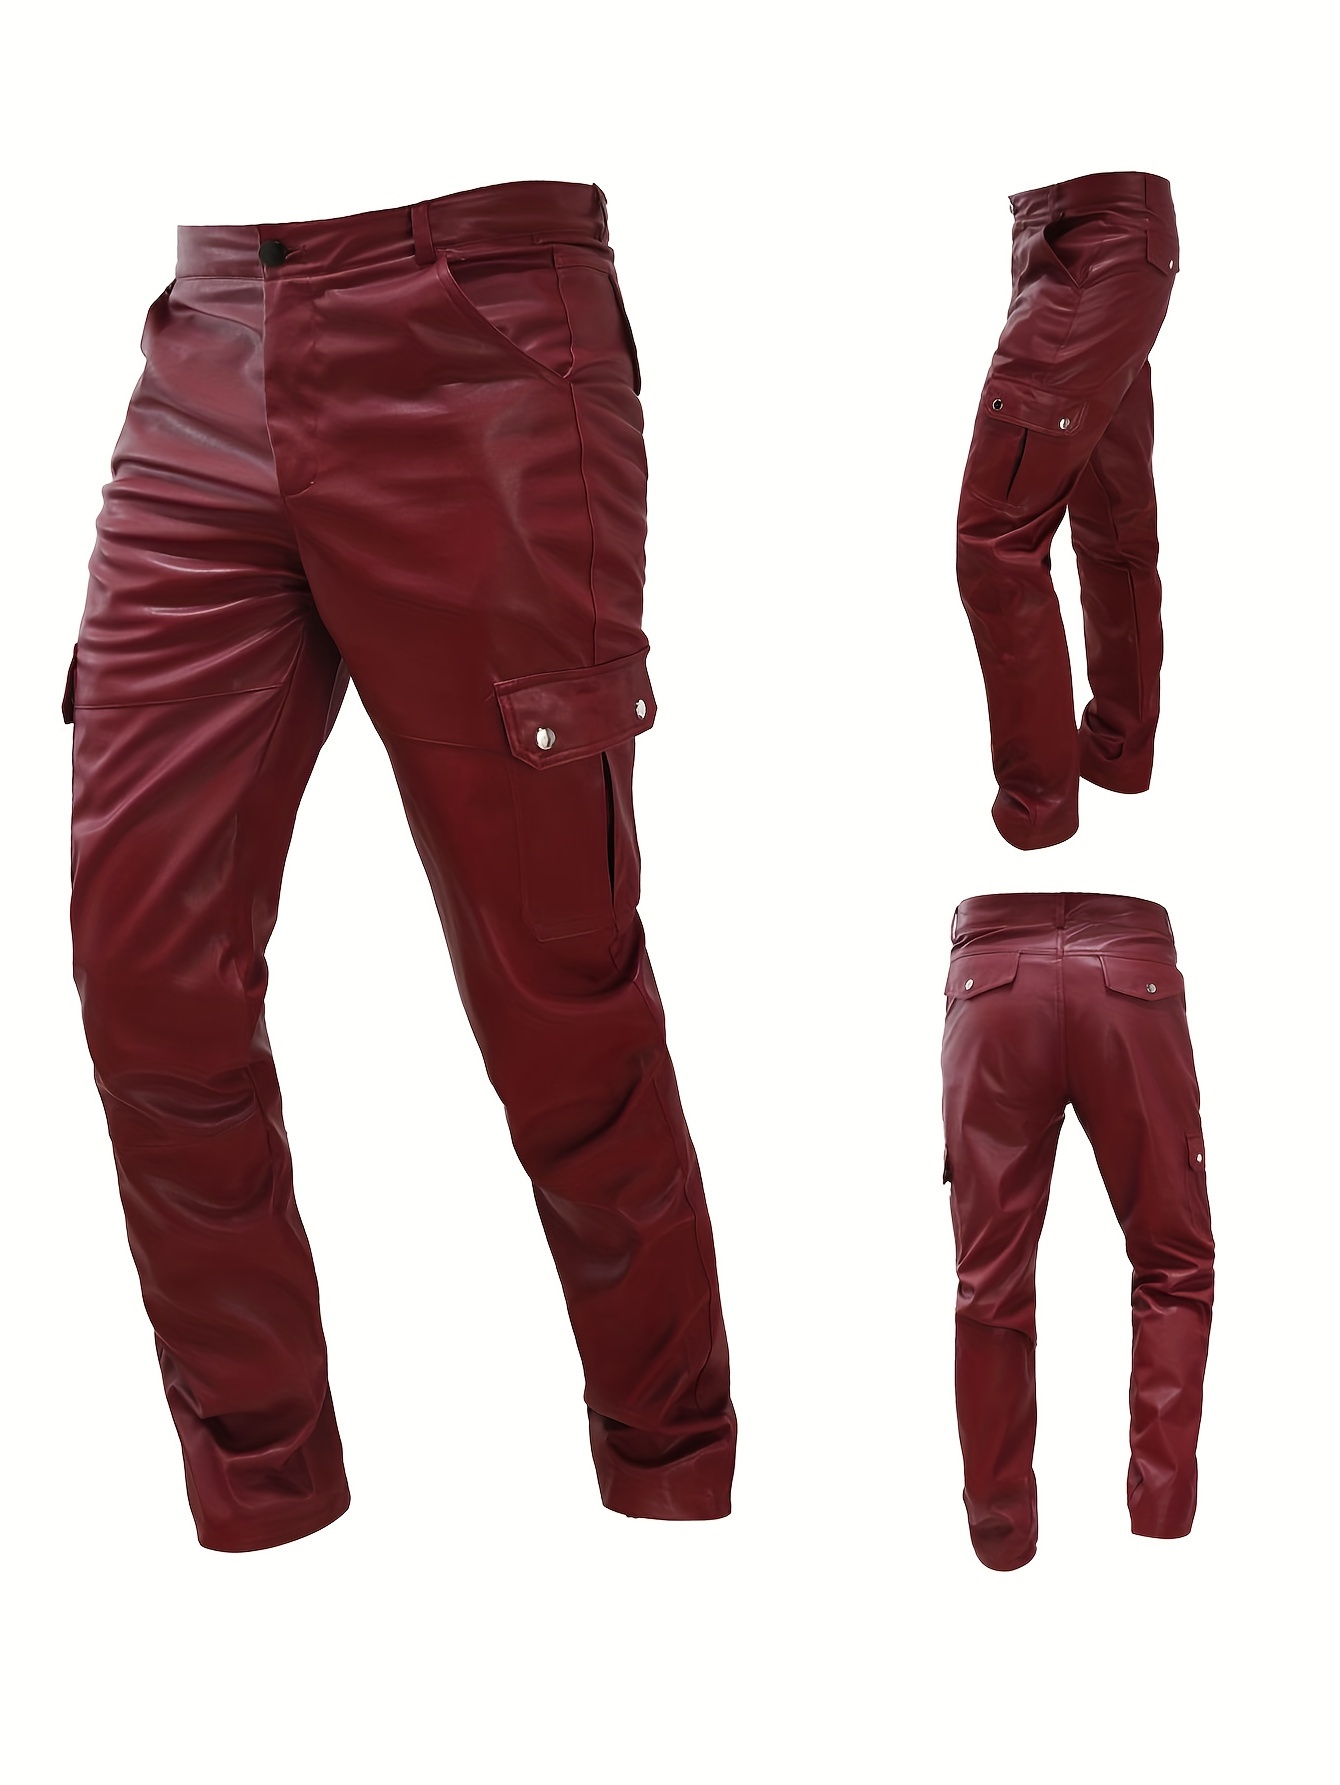 Pantaloni Finta Pelle Uomo Slim Fit Man PU Leather Pants PAMAN01 P